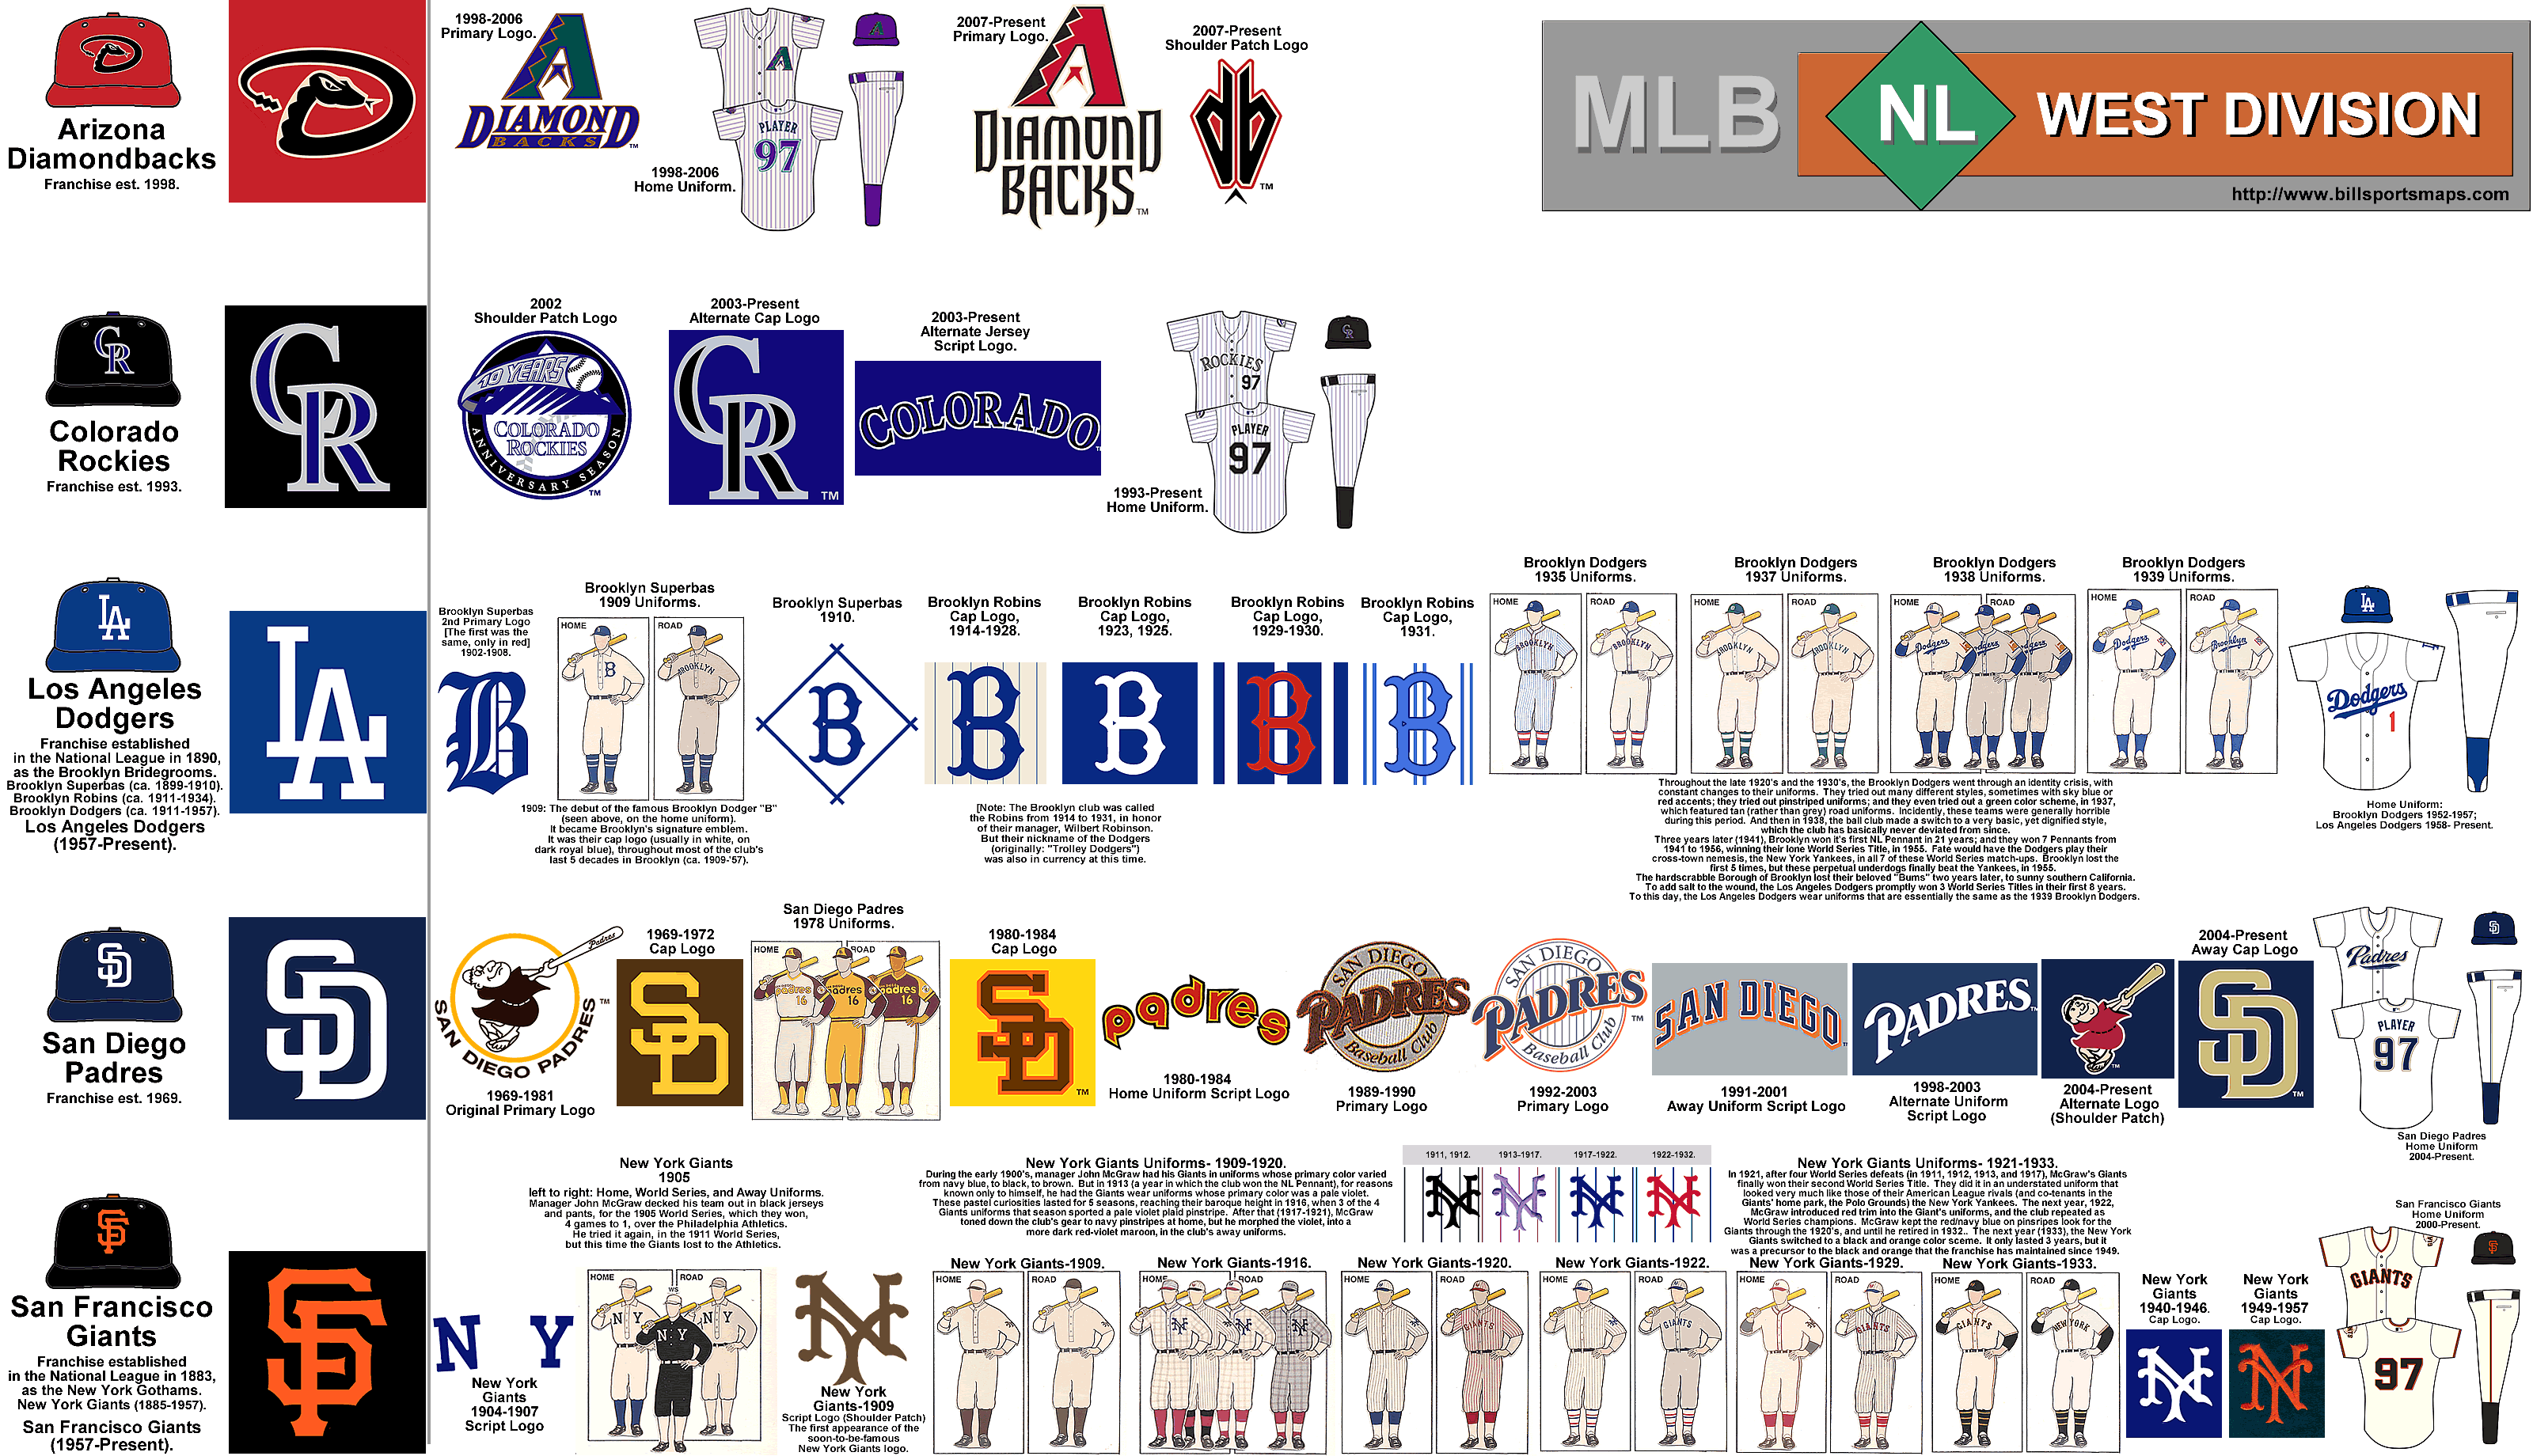 mlb_nl_west_old-uniforms_alt_logos_b.gif